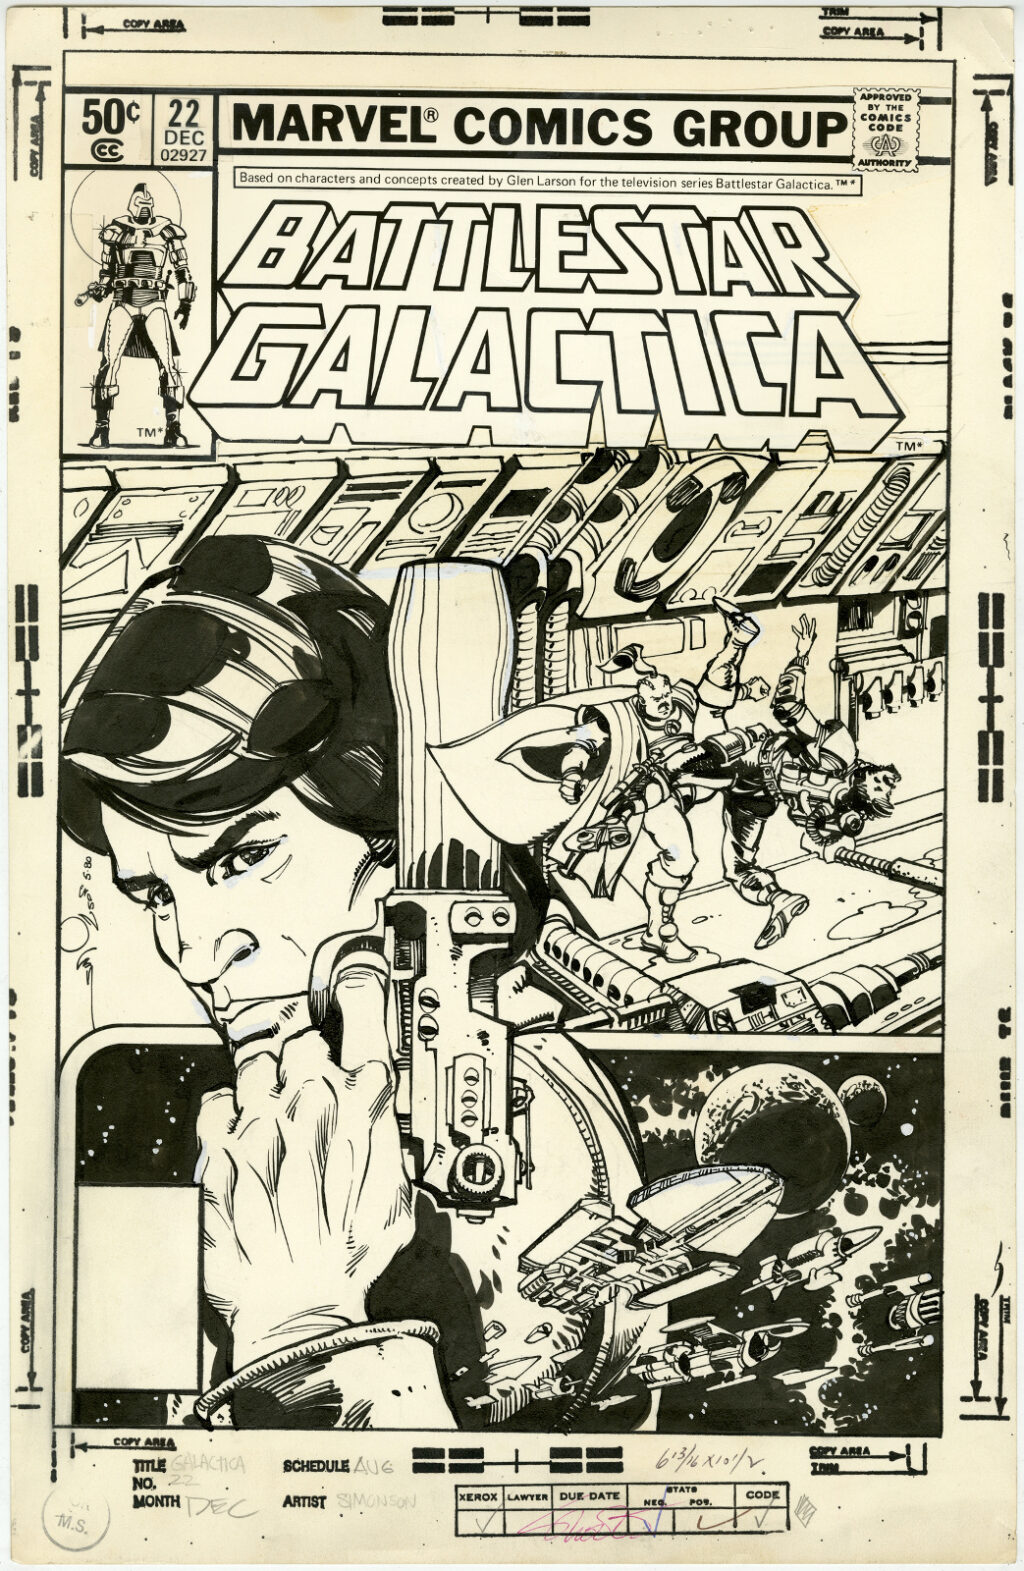 Walter Simonson’s Battlestar Galactica Art Edition cover prelim